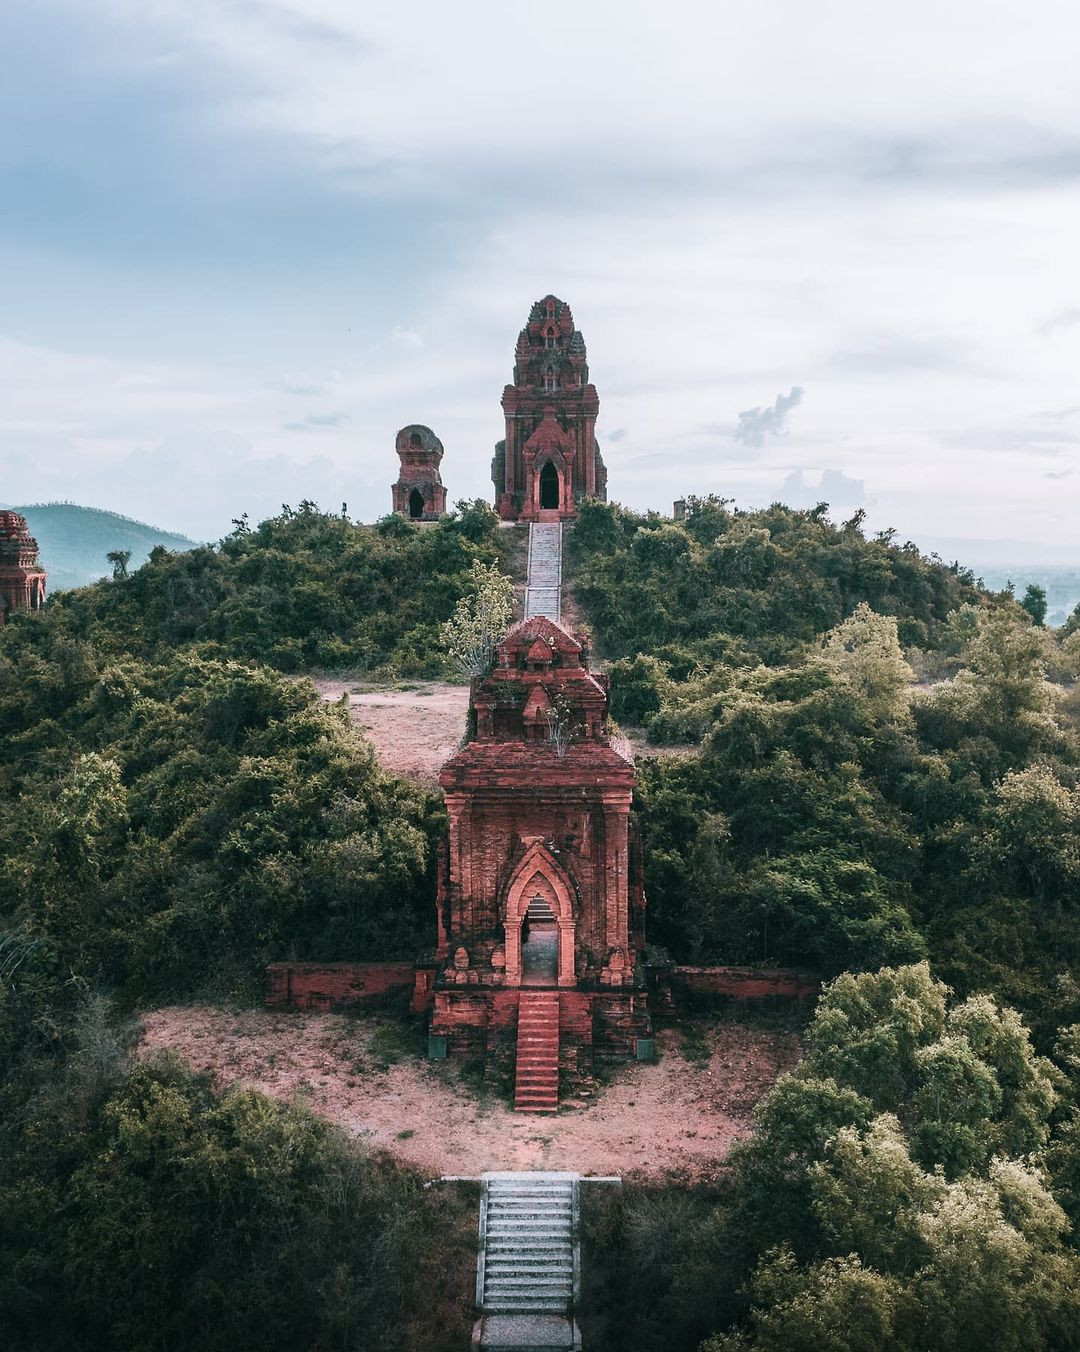 Tháp Bánh Ít ở Quy Nhơn – Vẻ đẹp bí ẩn của kiến trúc Chăm cổ